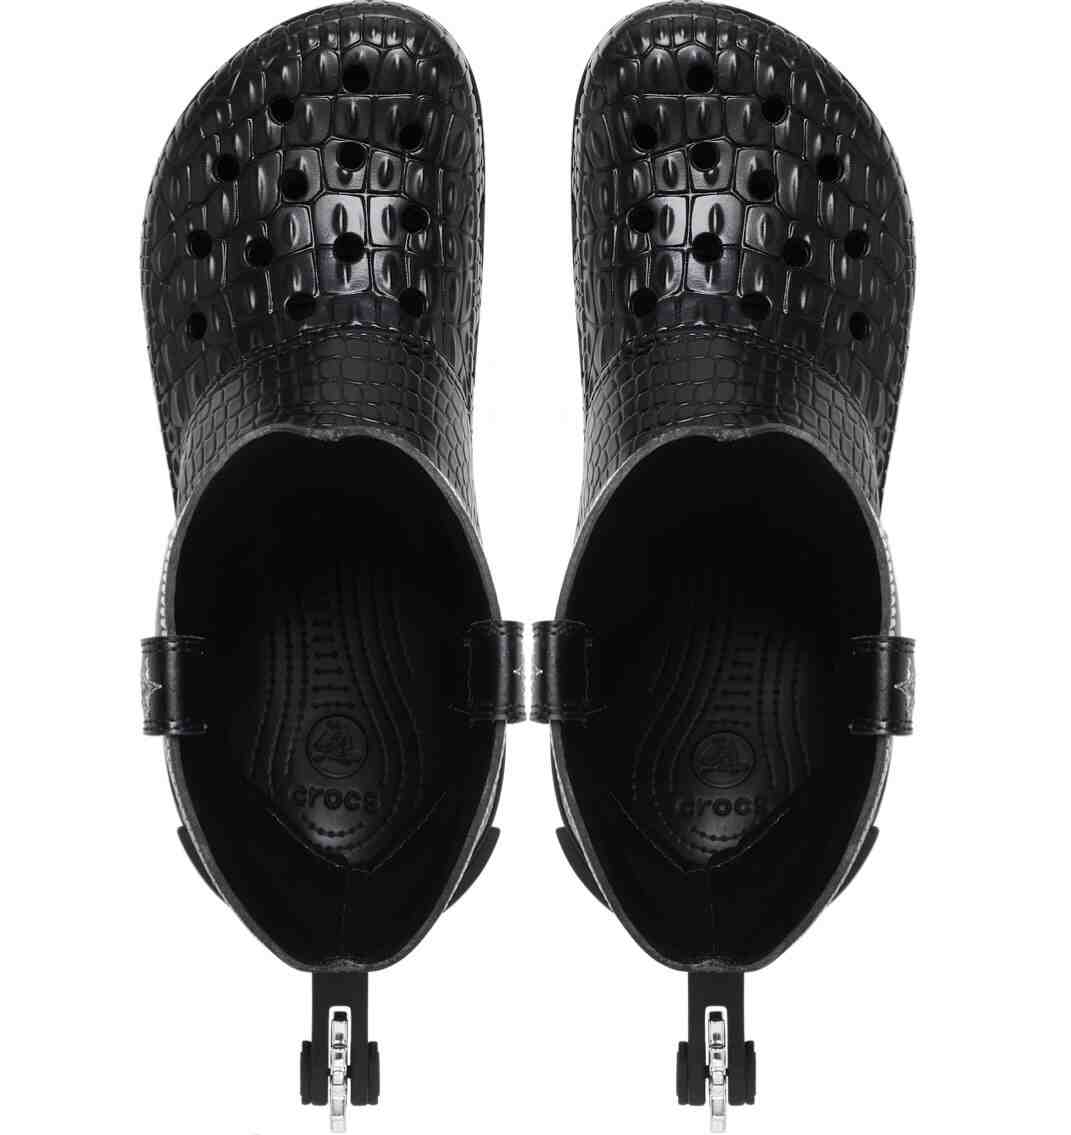 运动鞋, Crocs, Black - Crocs经典牛仔靴将于10月23日发售。